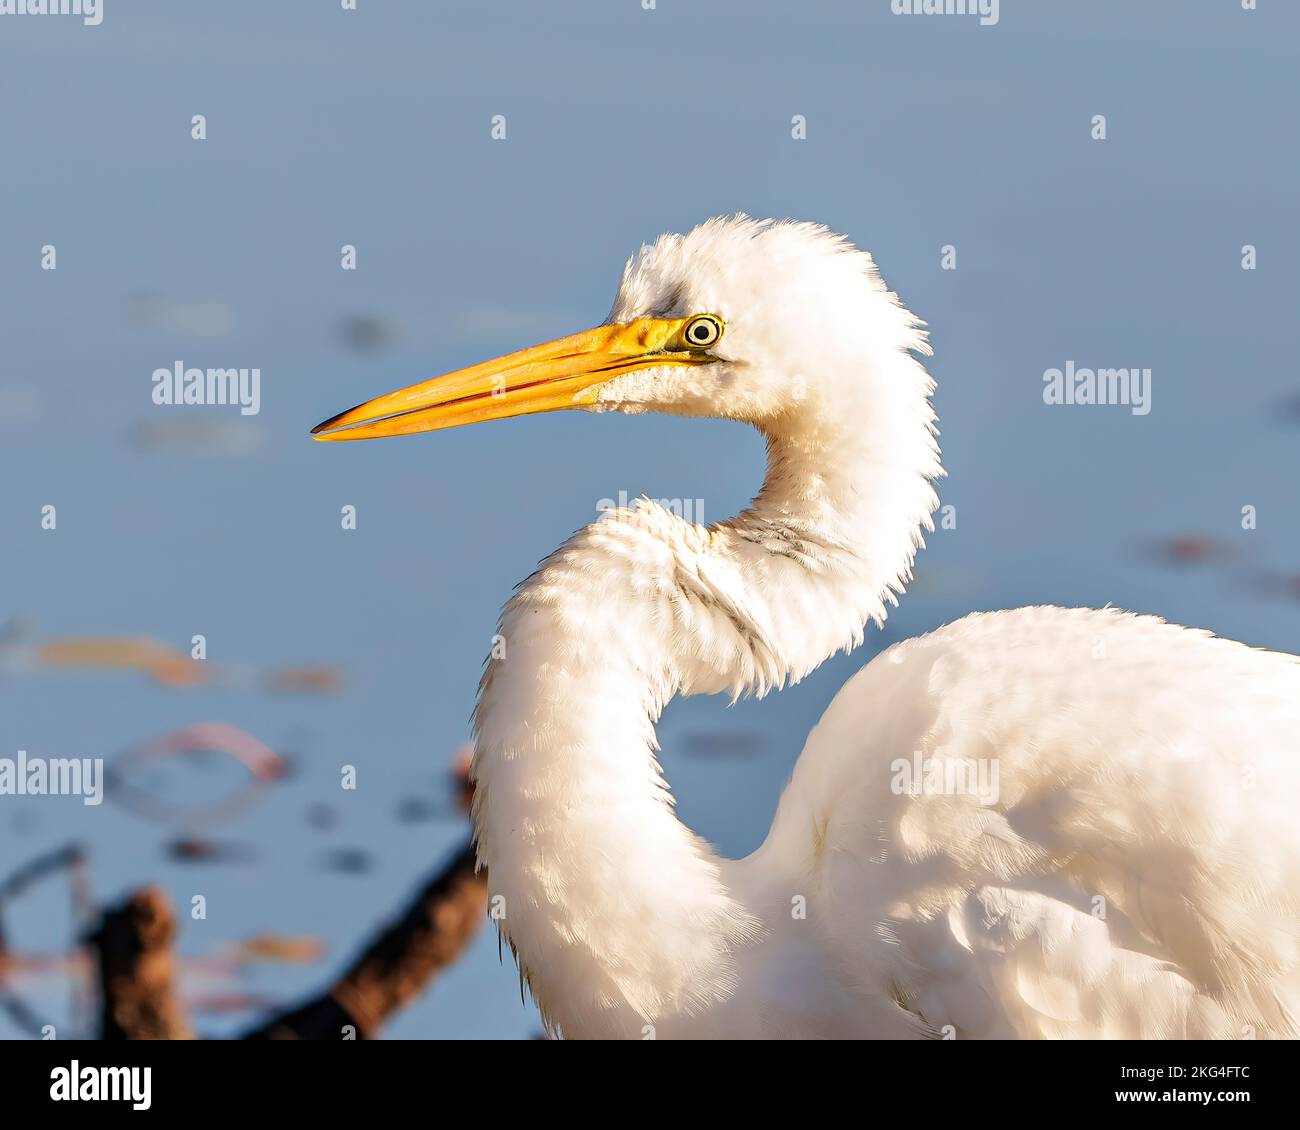 Grande Egret bianco vista laterale ripresa dalla testa crogiolandosi al sole con uno sfondo blu nel suo ambiente e habitat paludoso circostante. Immagine egret. Foto Stock